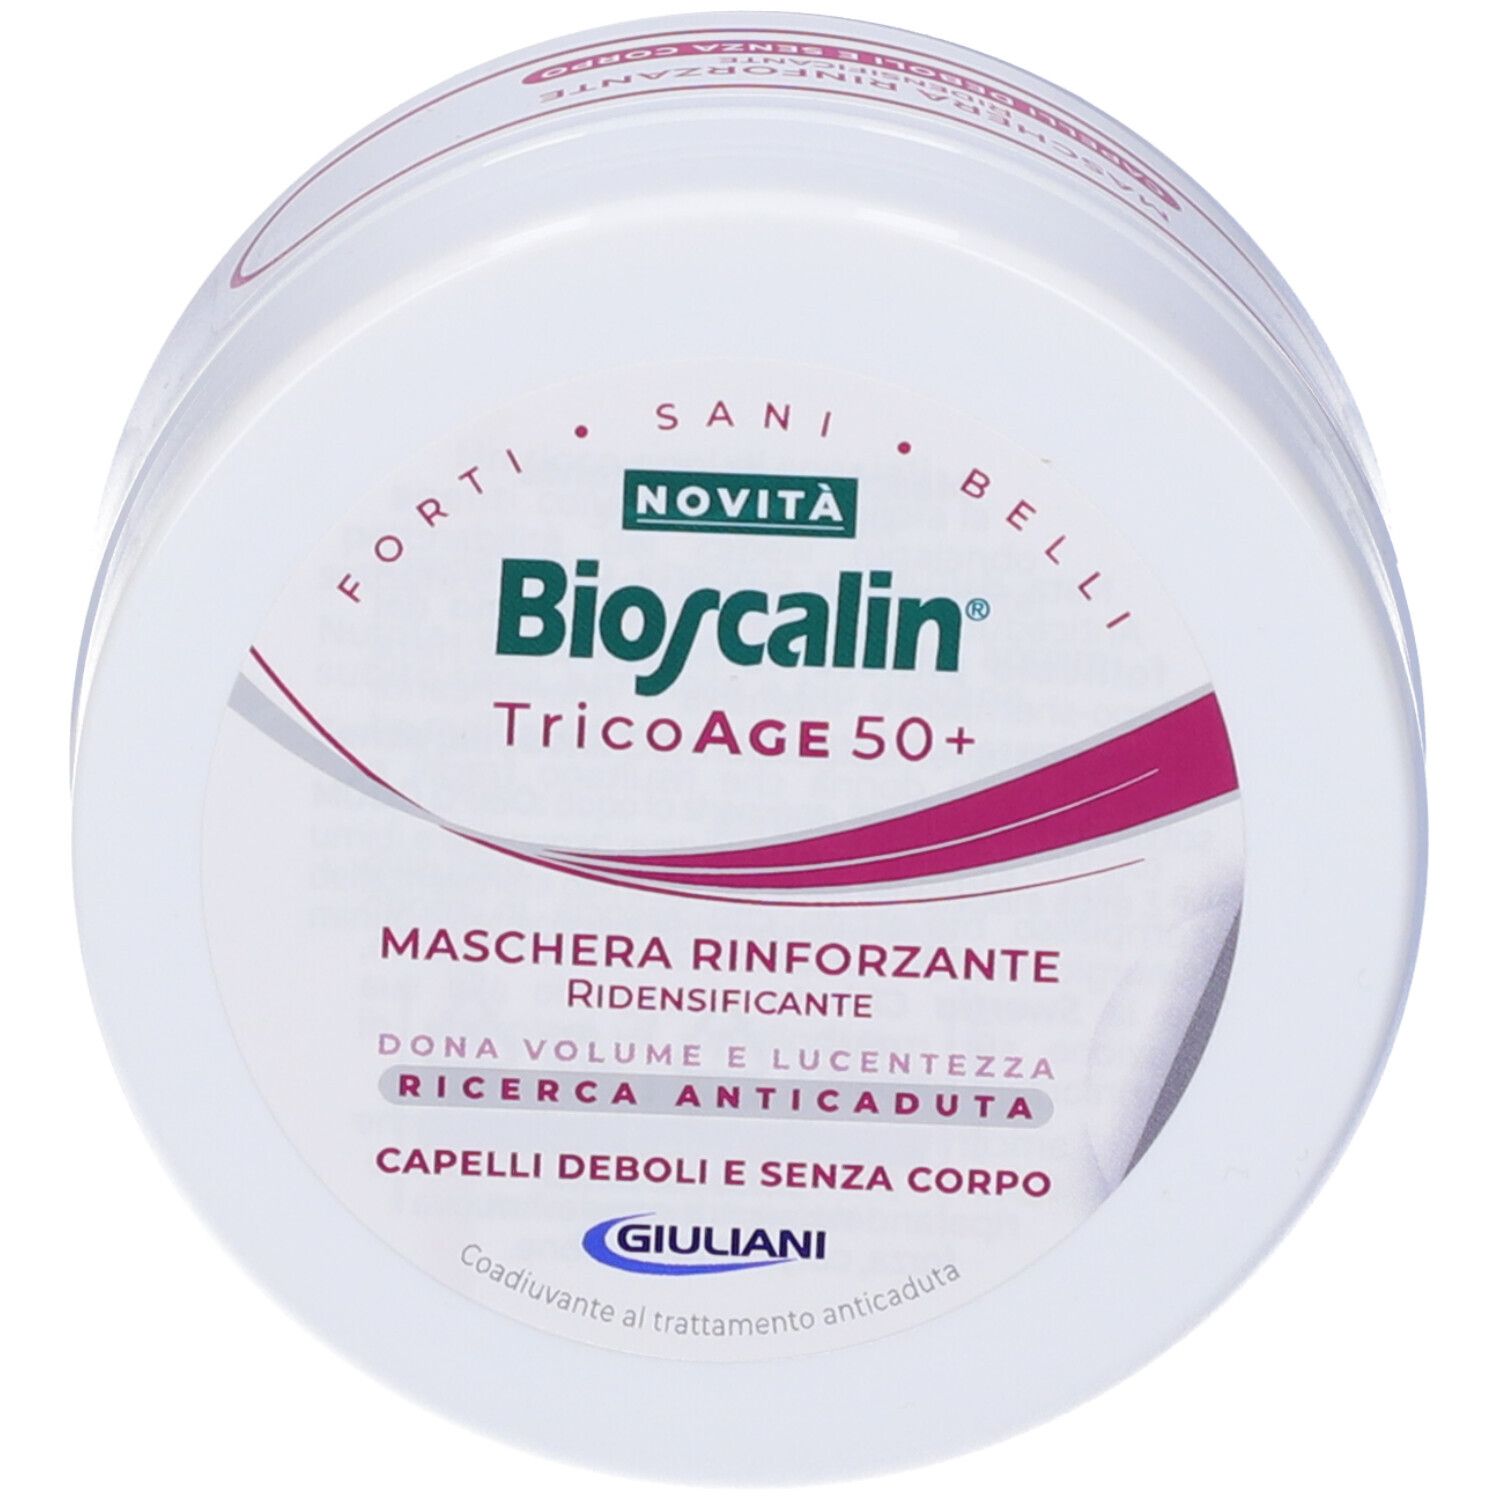 Bioscalin TricoAge 50+ Maschera Rinforzante Ridensificante